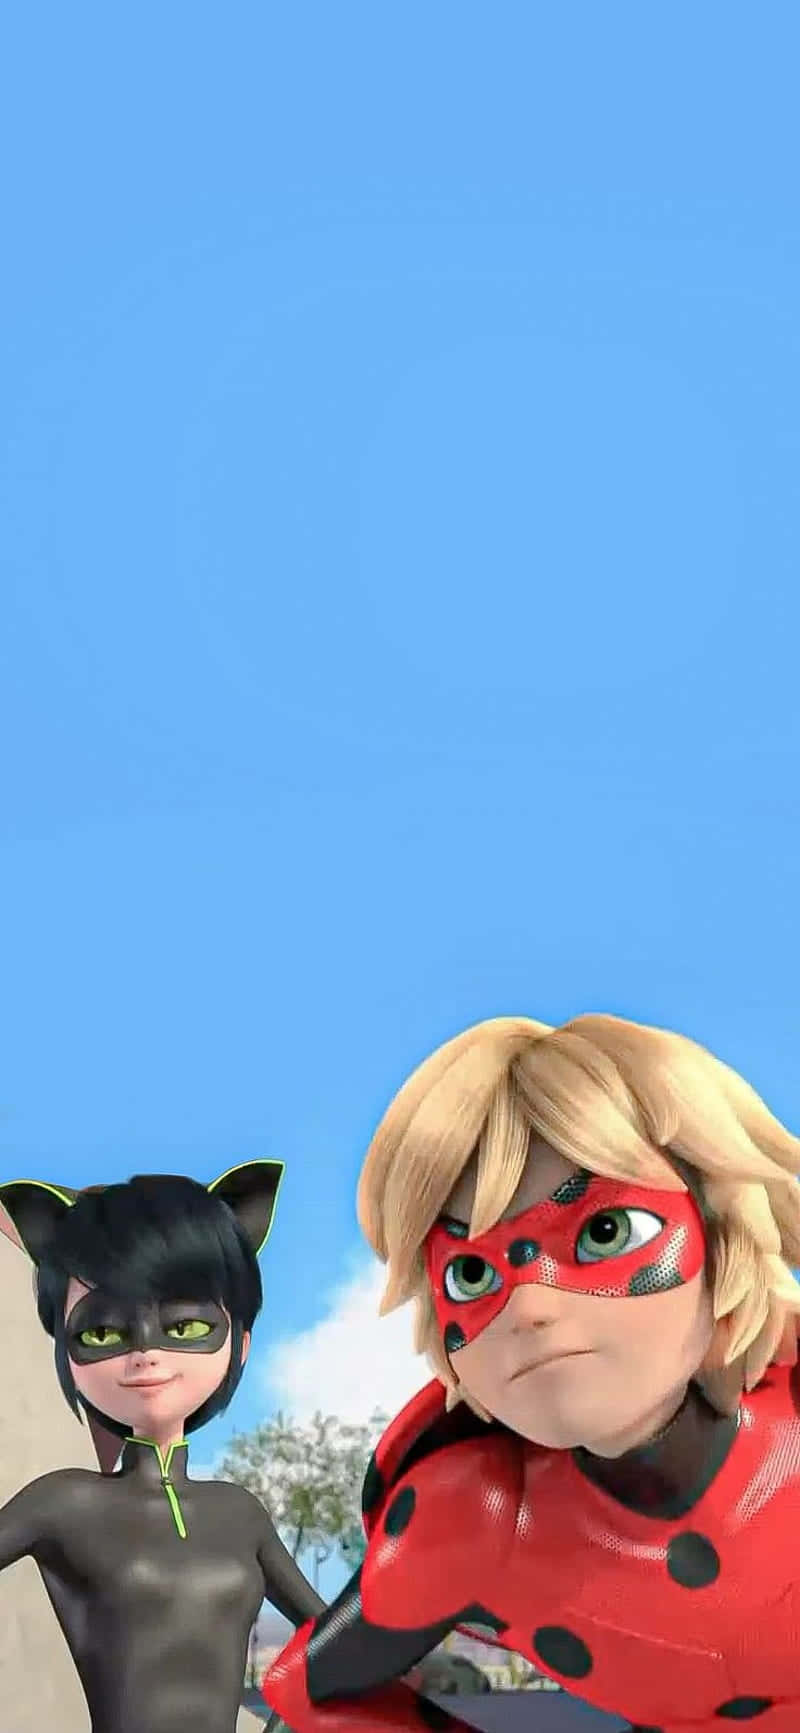 Adrien, den helte Cat Noir fra Miraculous Ladybug, er klar til at dekorere din skærm med sin gådefulde charme. Wallpaper